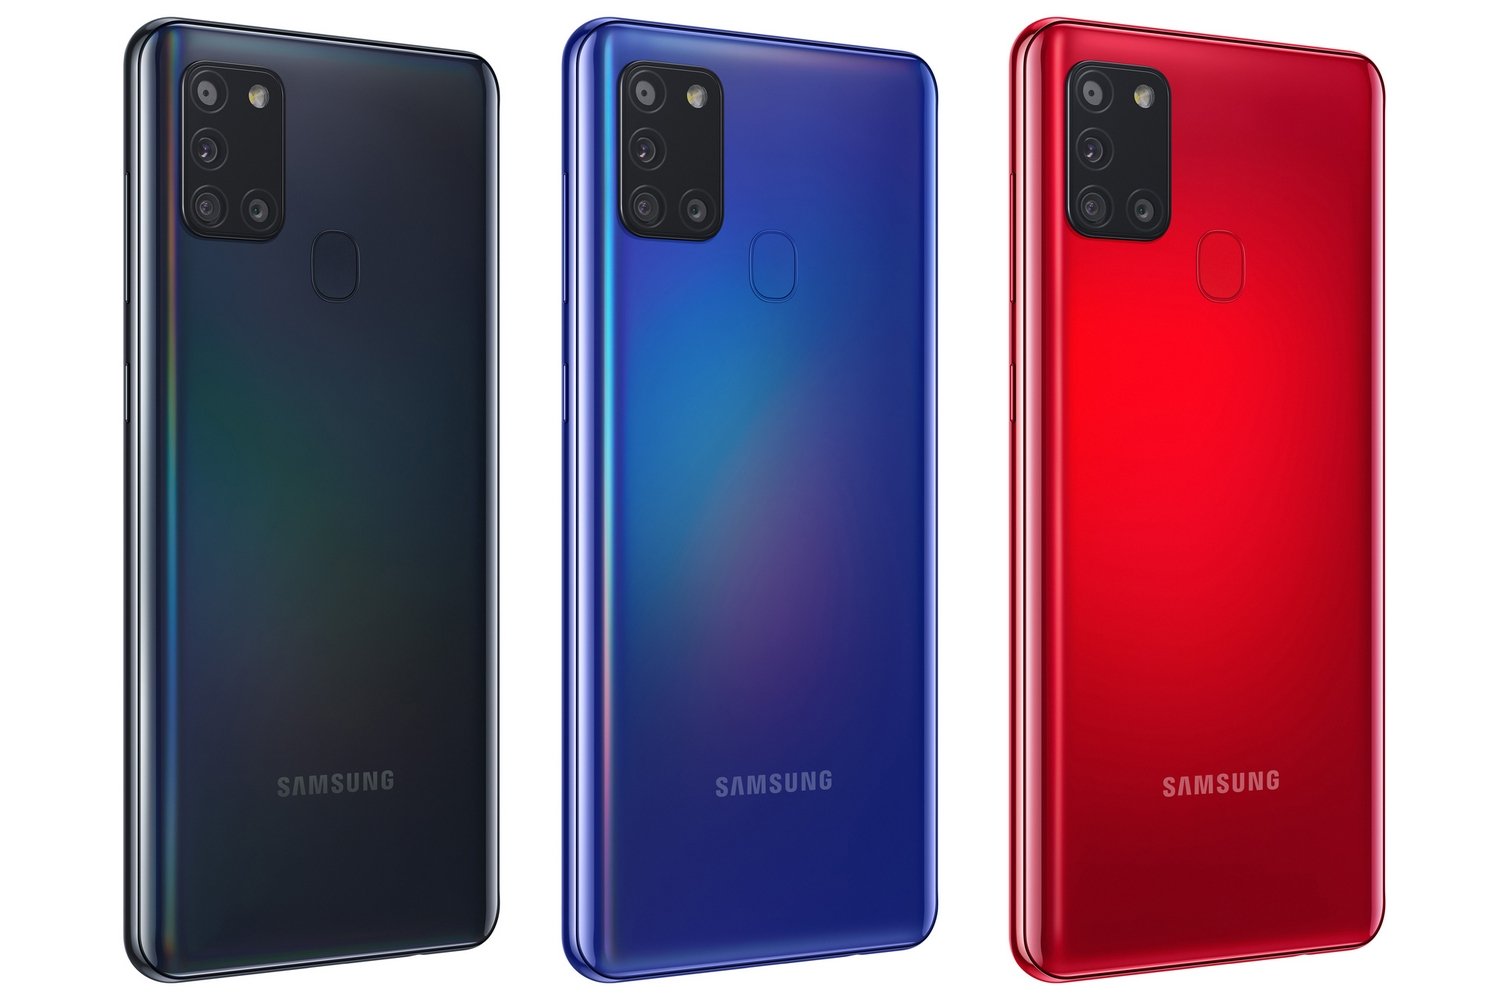 Samsung Galaxy A21s technische daten, test, review, vergleich - PhonesData